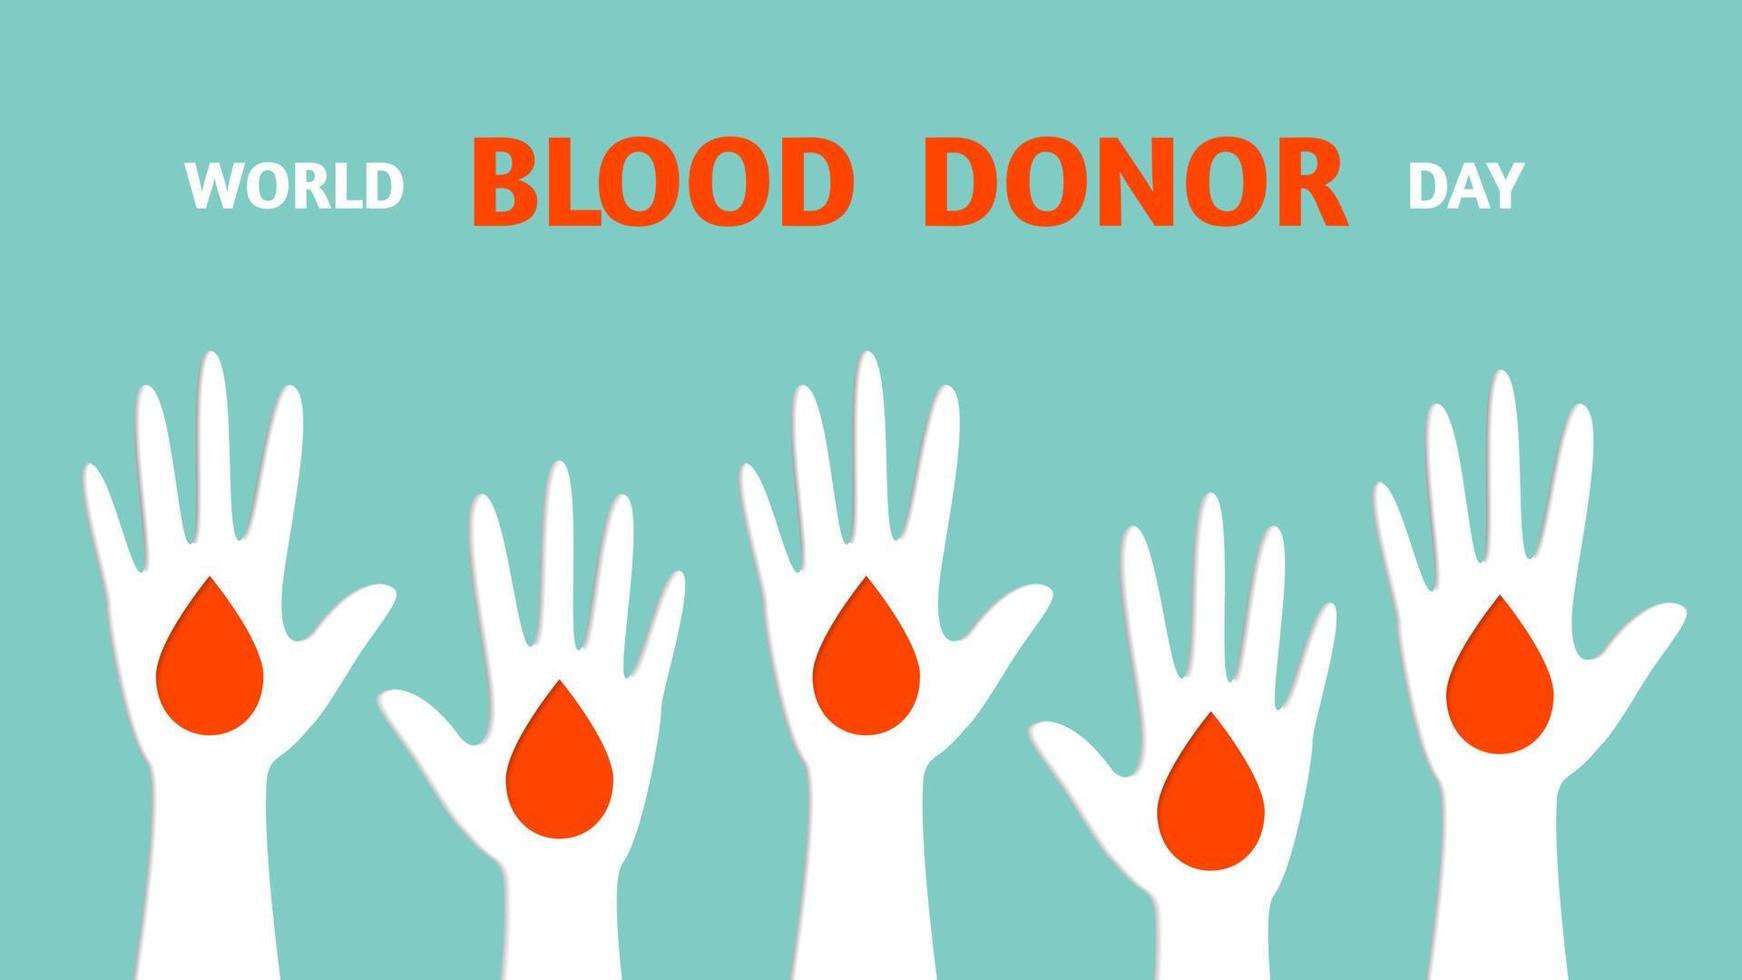 dia mundial do doador de sangue, mão humana é levantada na frente, gota de sangue, banner em estilo de papel cortado. conceito de voluntariado. ilustração vetorial de estoque. vetor